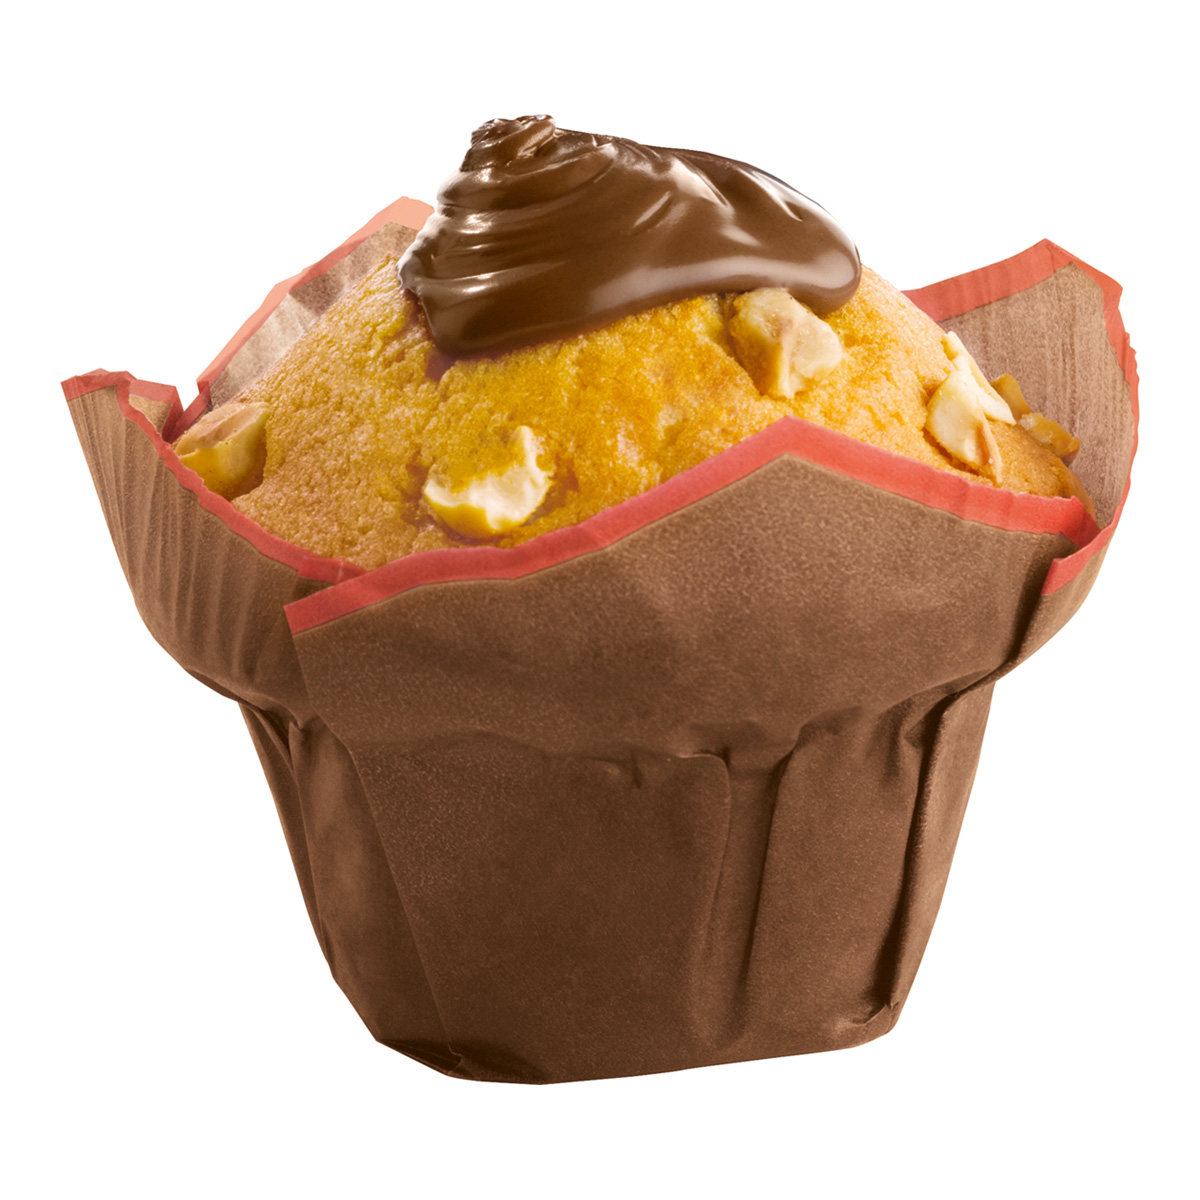 Baker & Baker Muffin chocolade-hazelnoot